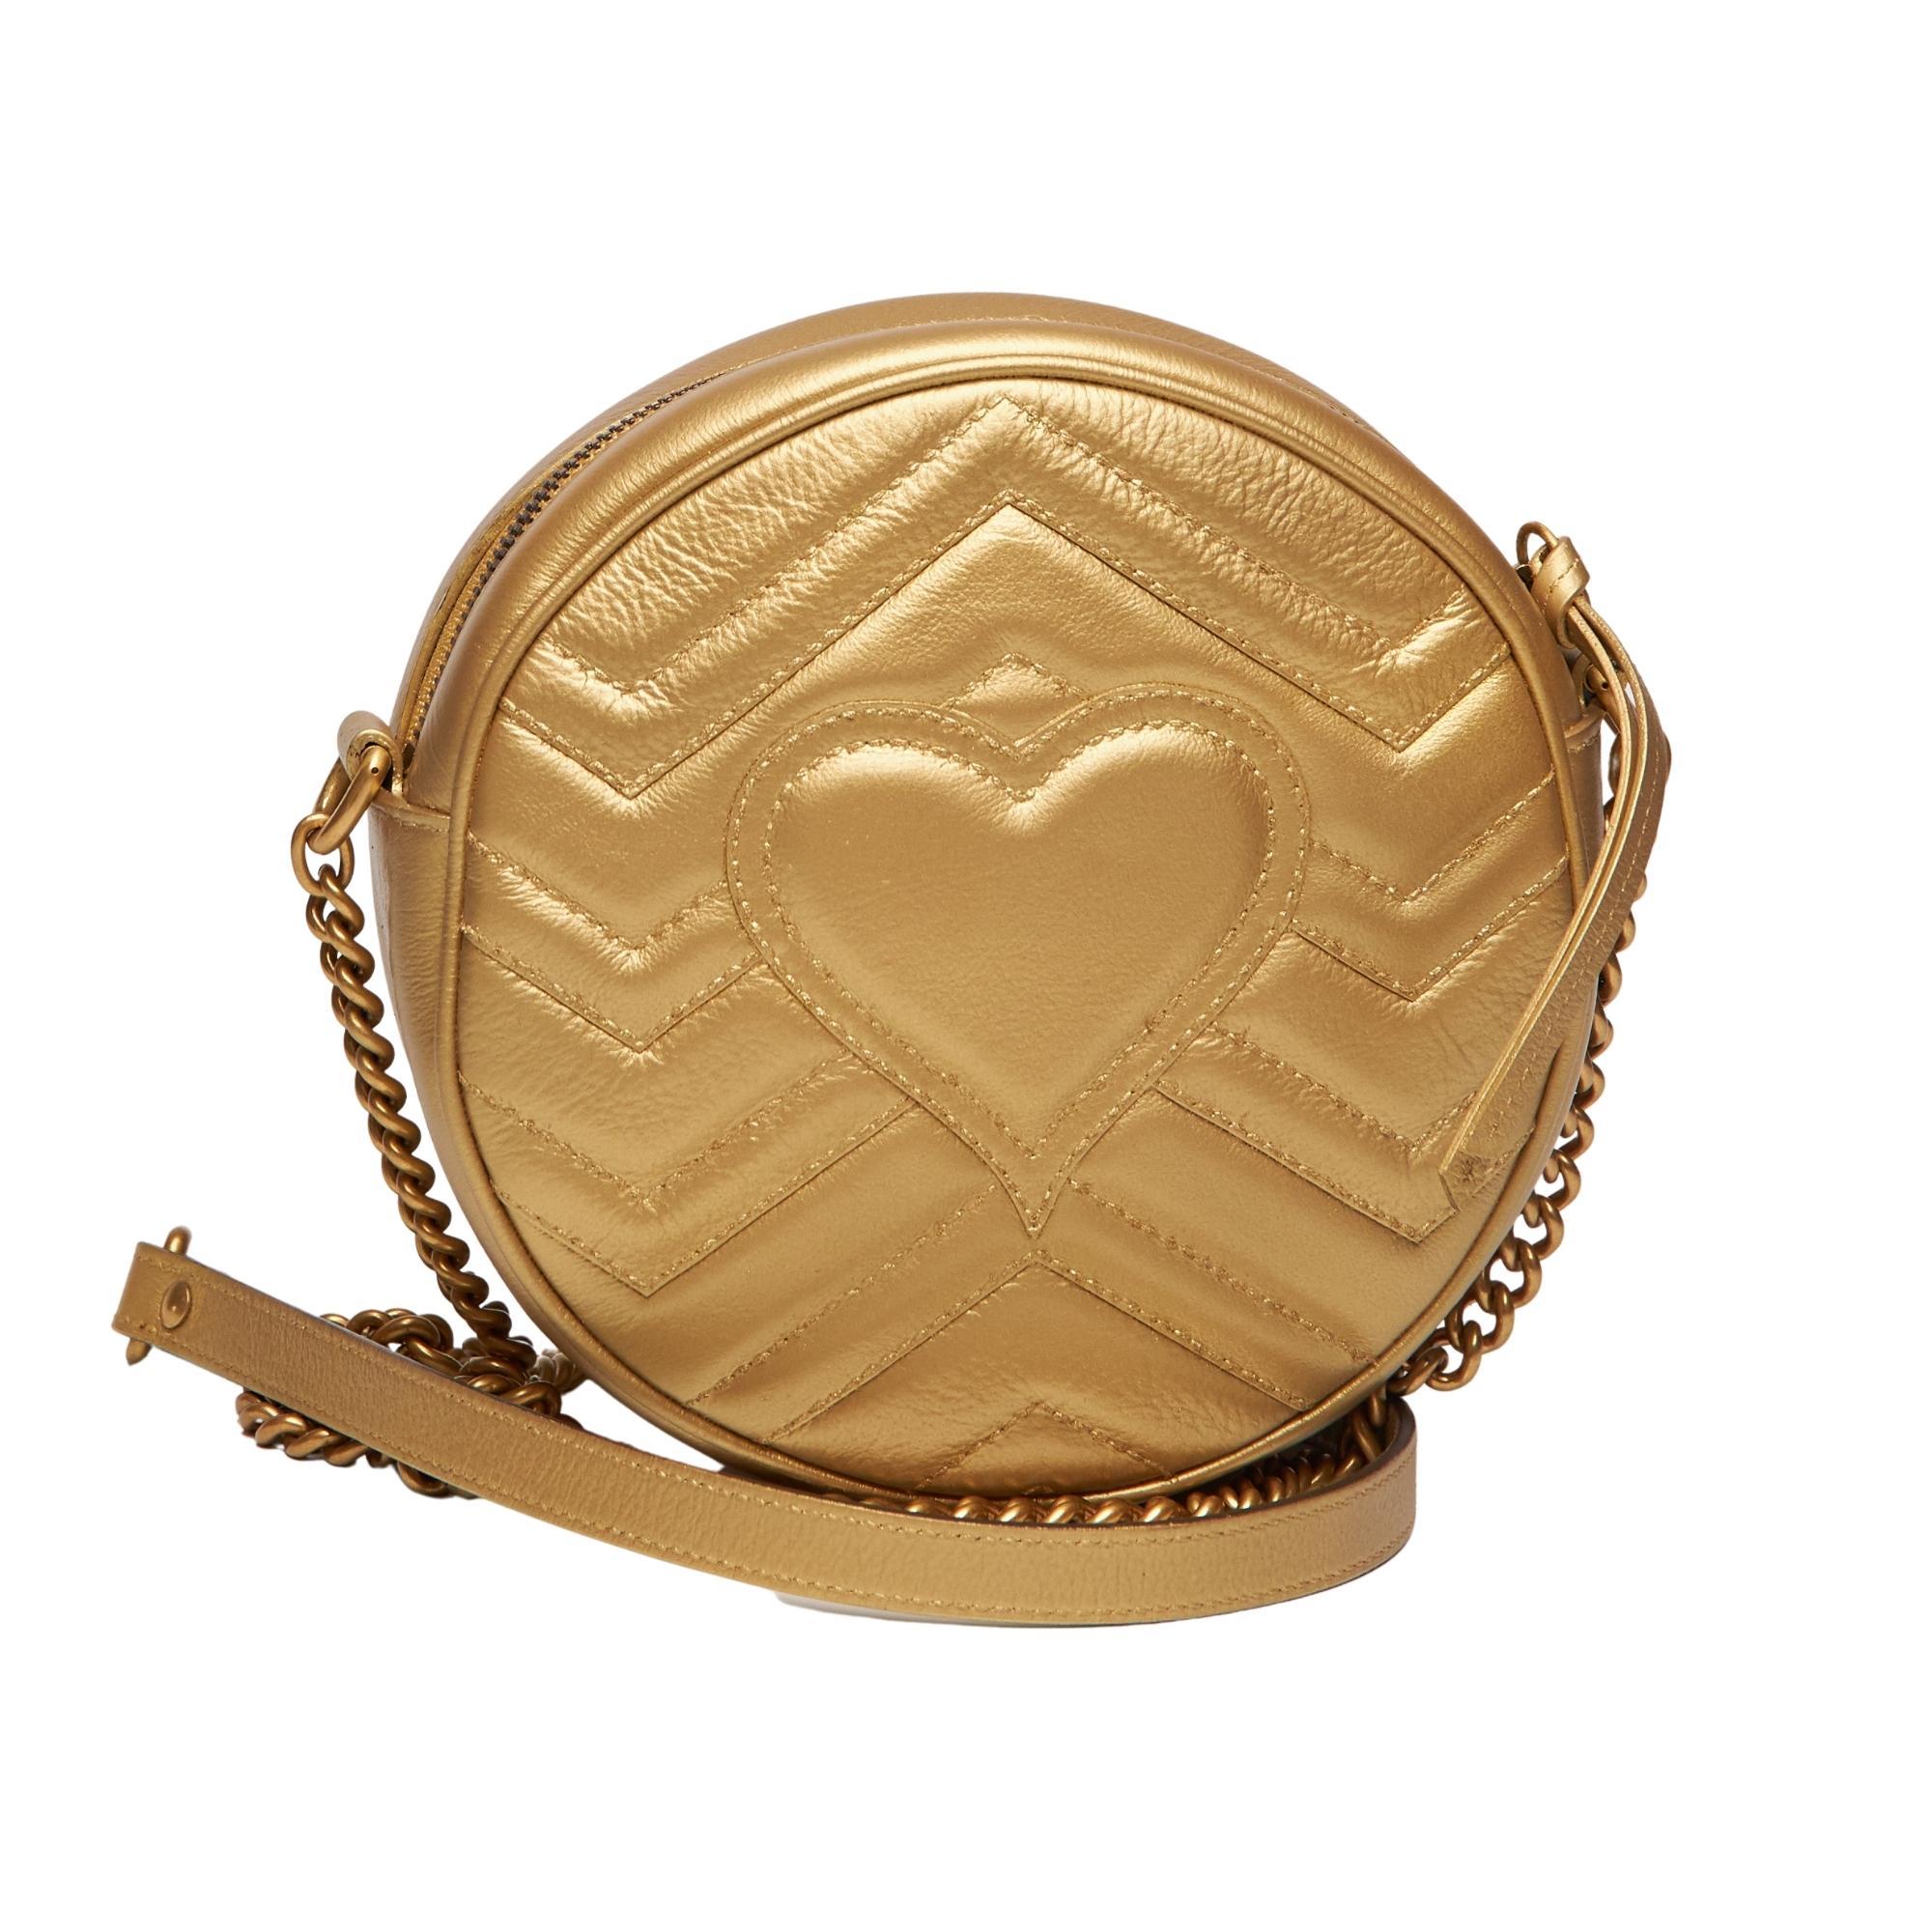 Diese Gucci-Schultertasche ist aus goldfarbenem Kalbsleder gefertigt und verfügt über ein doppeltes G-Logo und antikisierte goldfarbene Beschläge,
schulterriemen aus Kettengliedern, Satinfutter und Reißverschluss an der Oberseite.

FARBE: